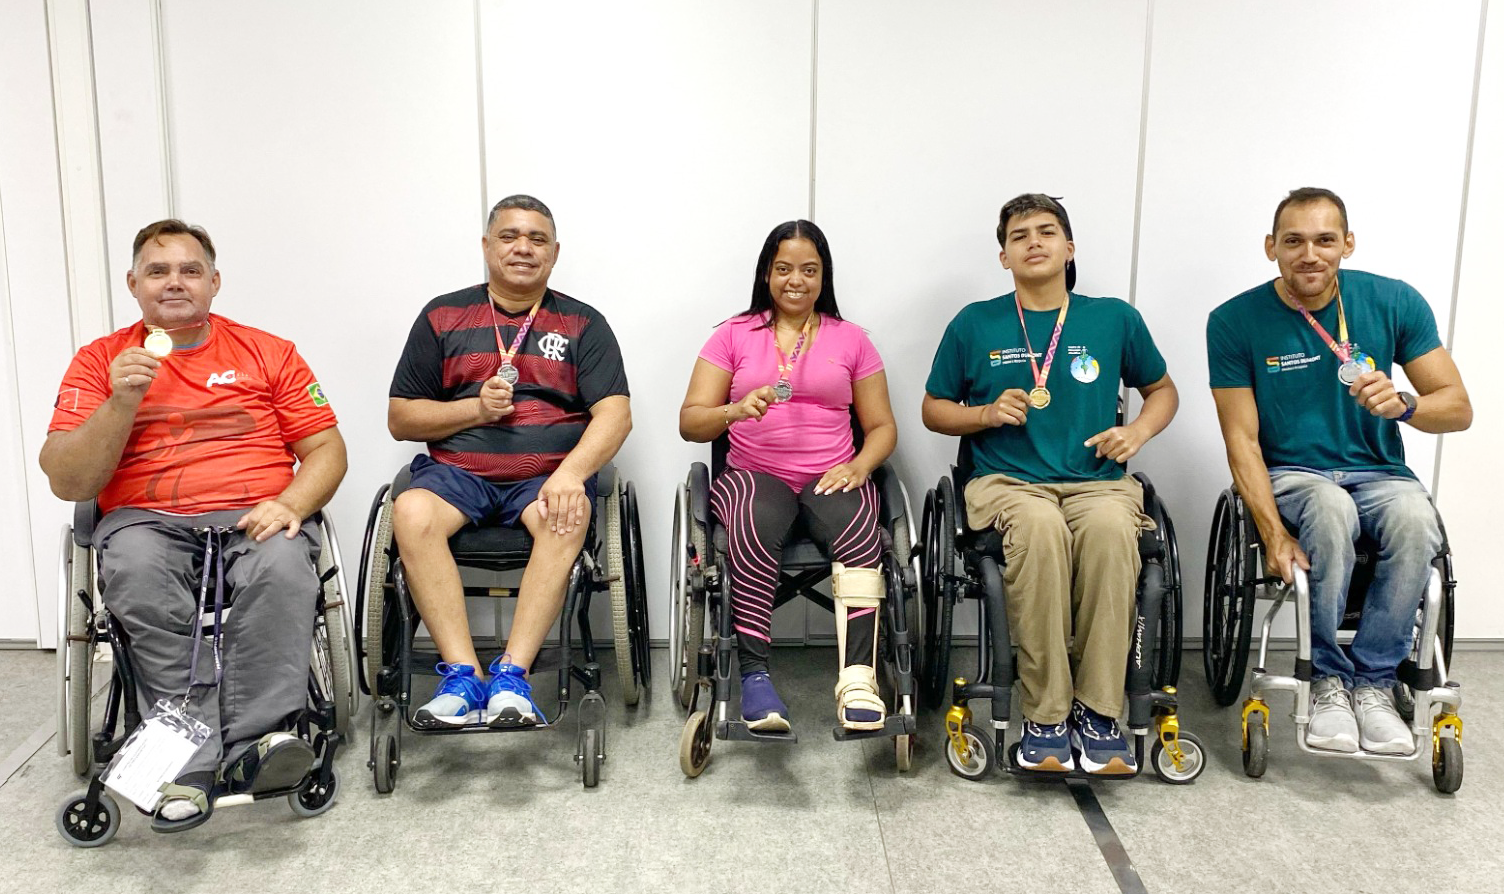 Paratletas do ISD posam com medalhas conquistadas em meeting paralimpico